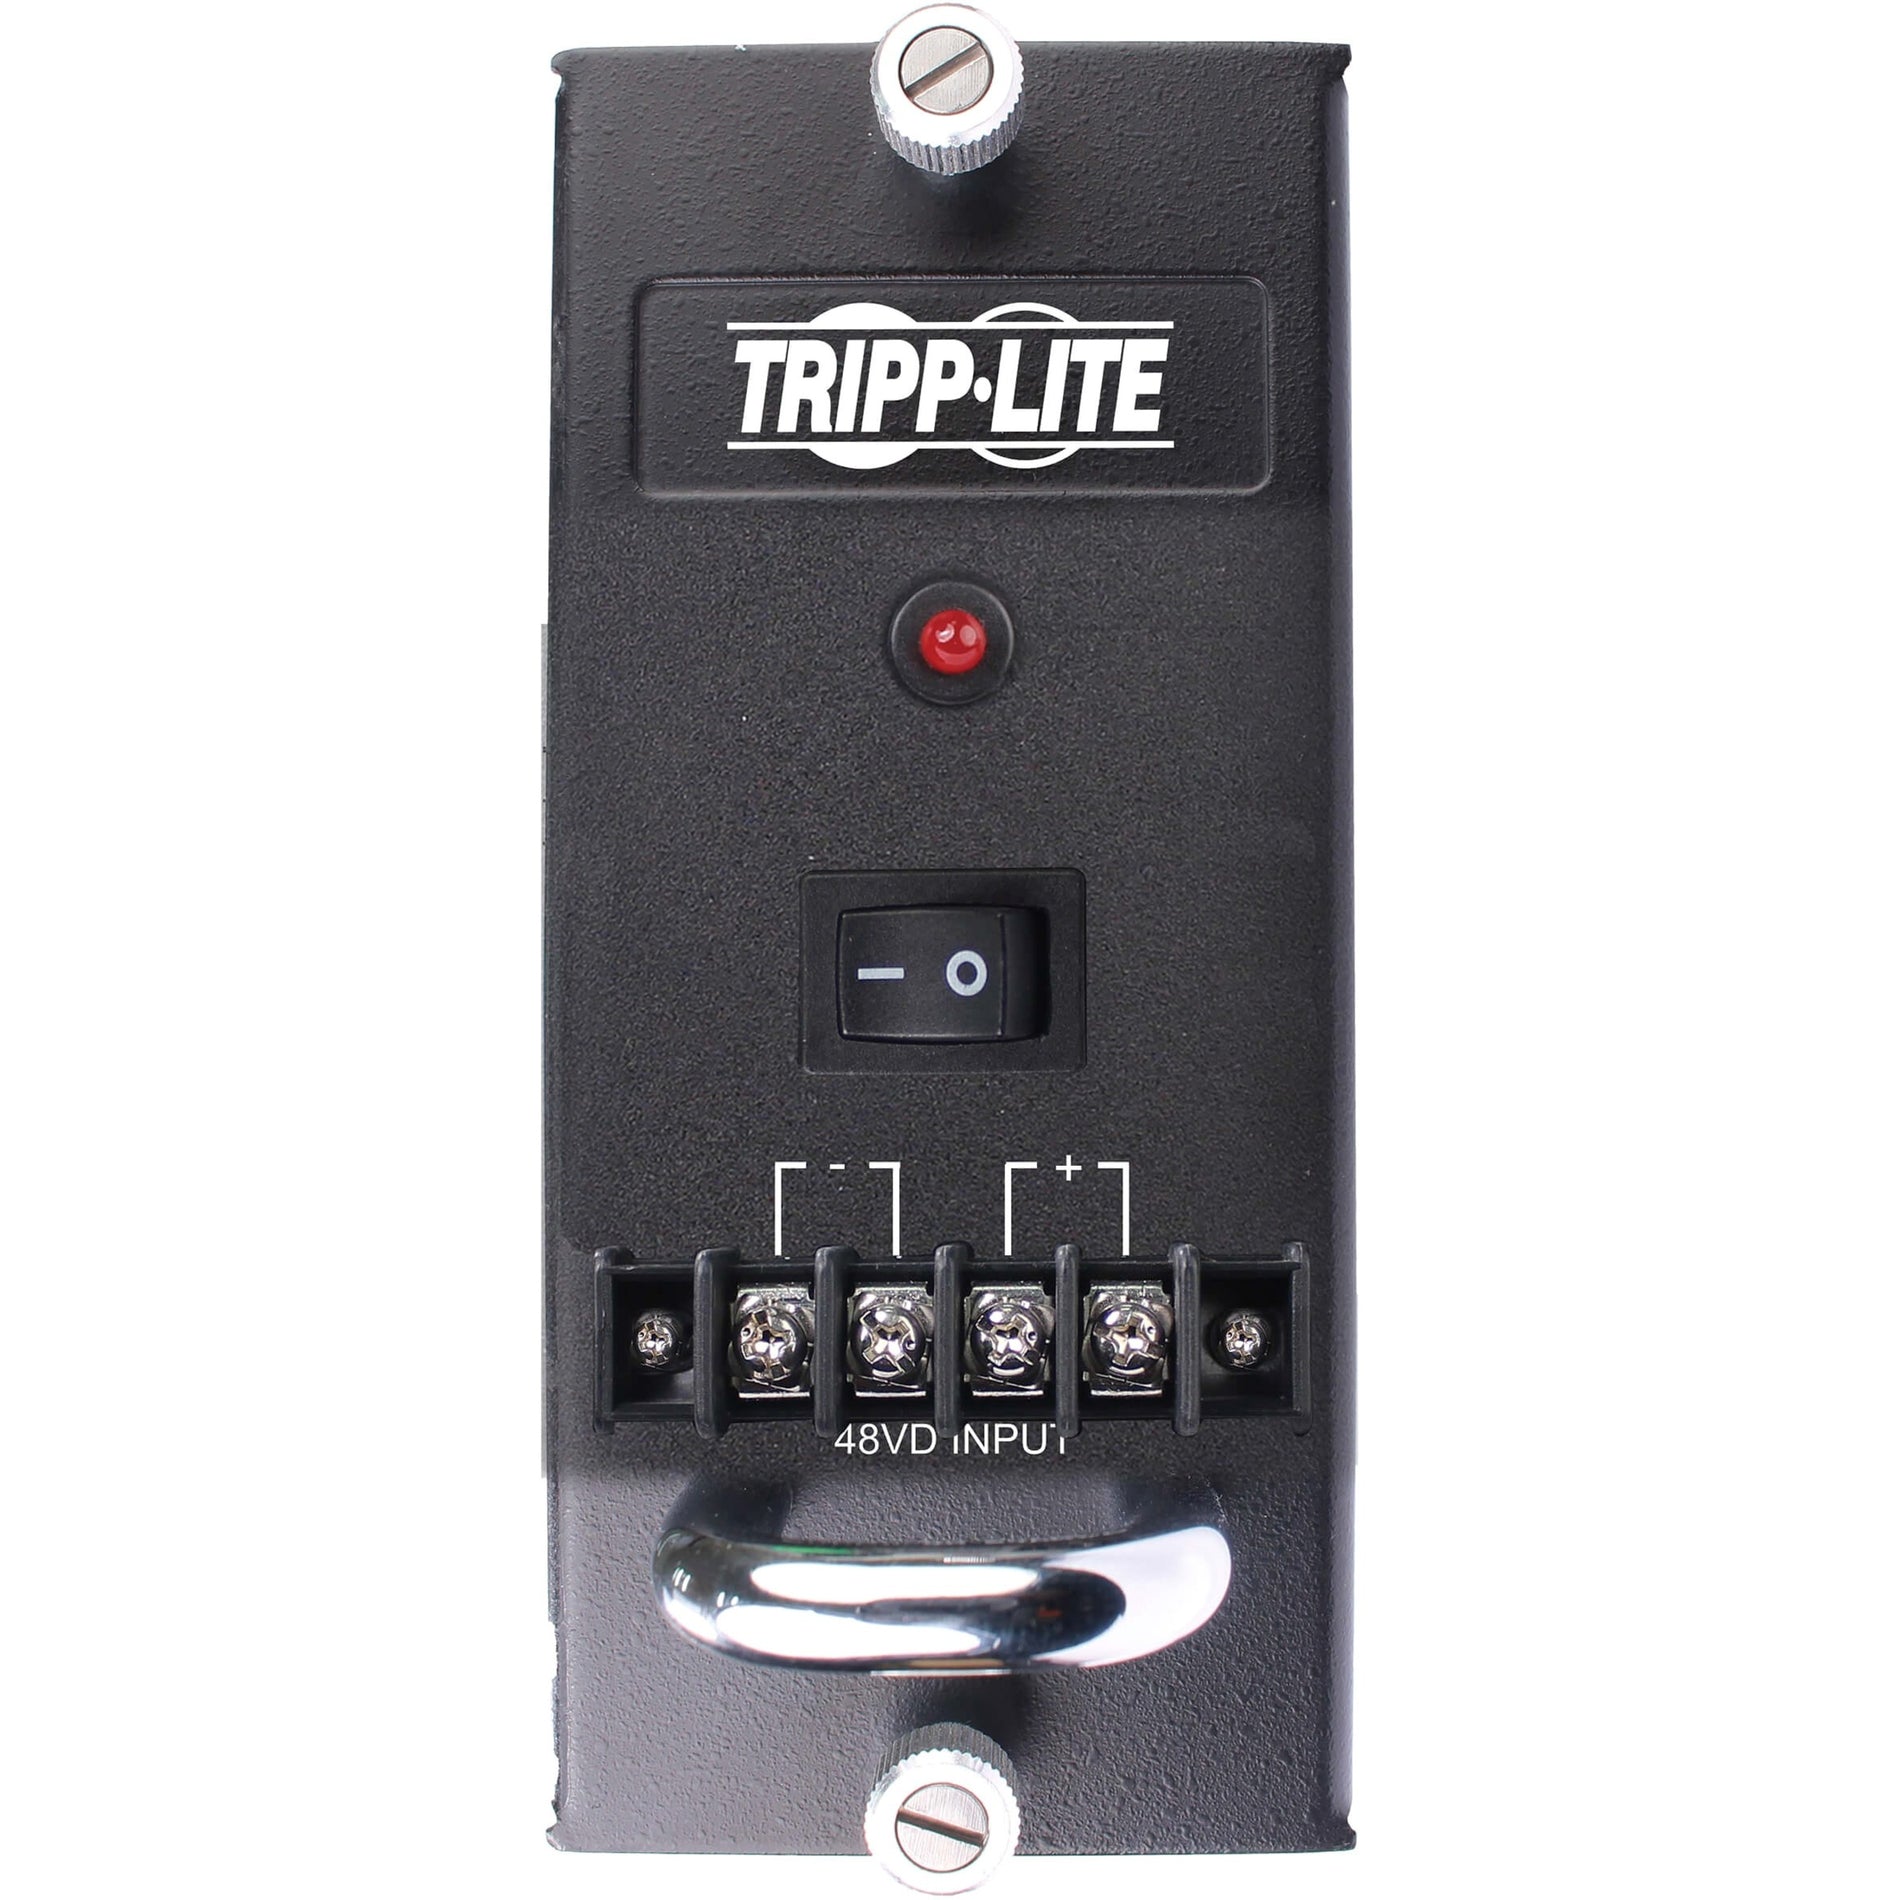 Tripp Lite N785-CH75W-DC 75W Fuente de alimentación Garantía de 3 años 12V @ 6.5A Potencia de salida